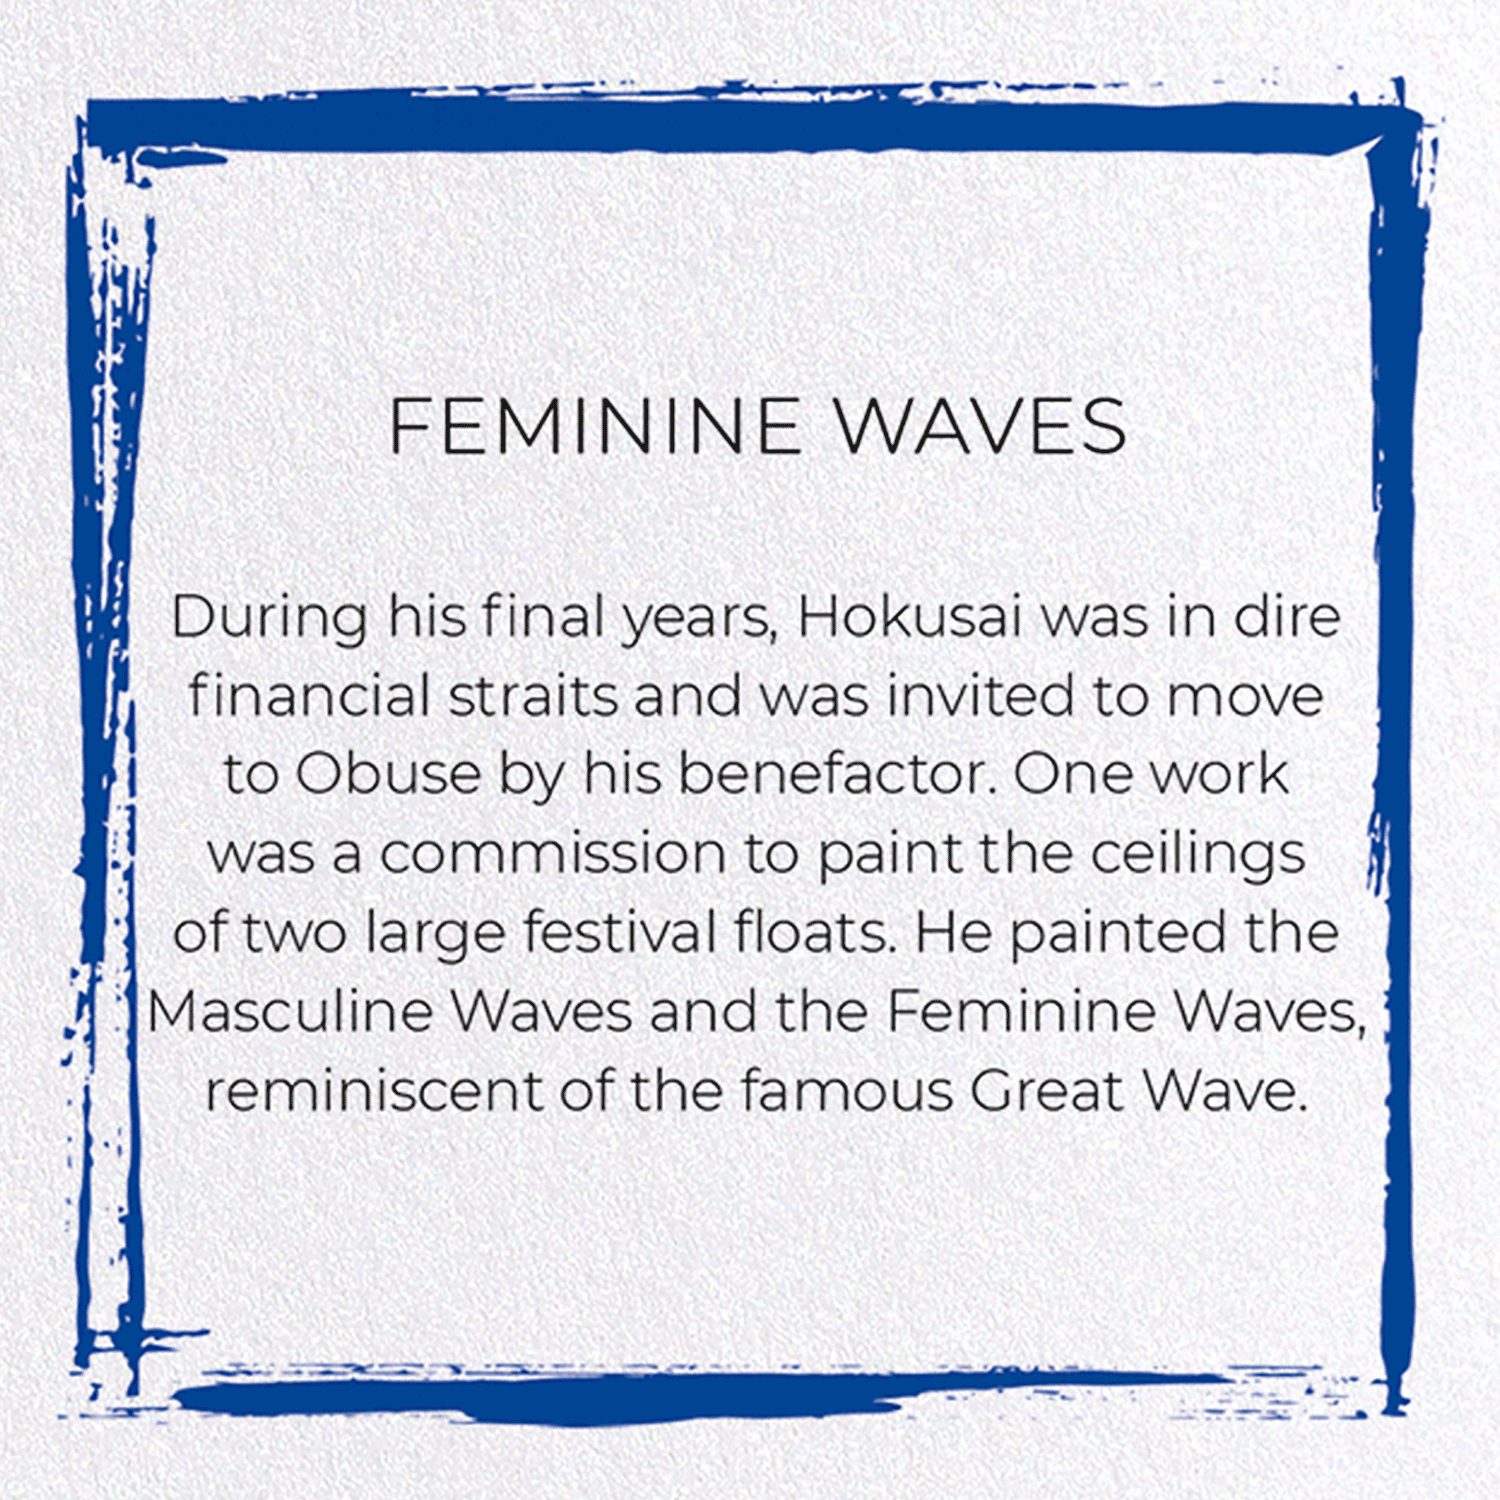 FEMININE WAVES